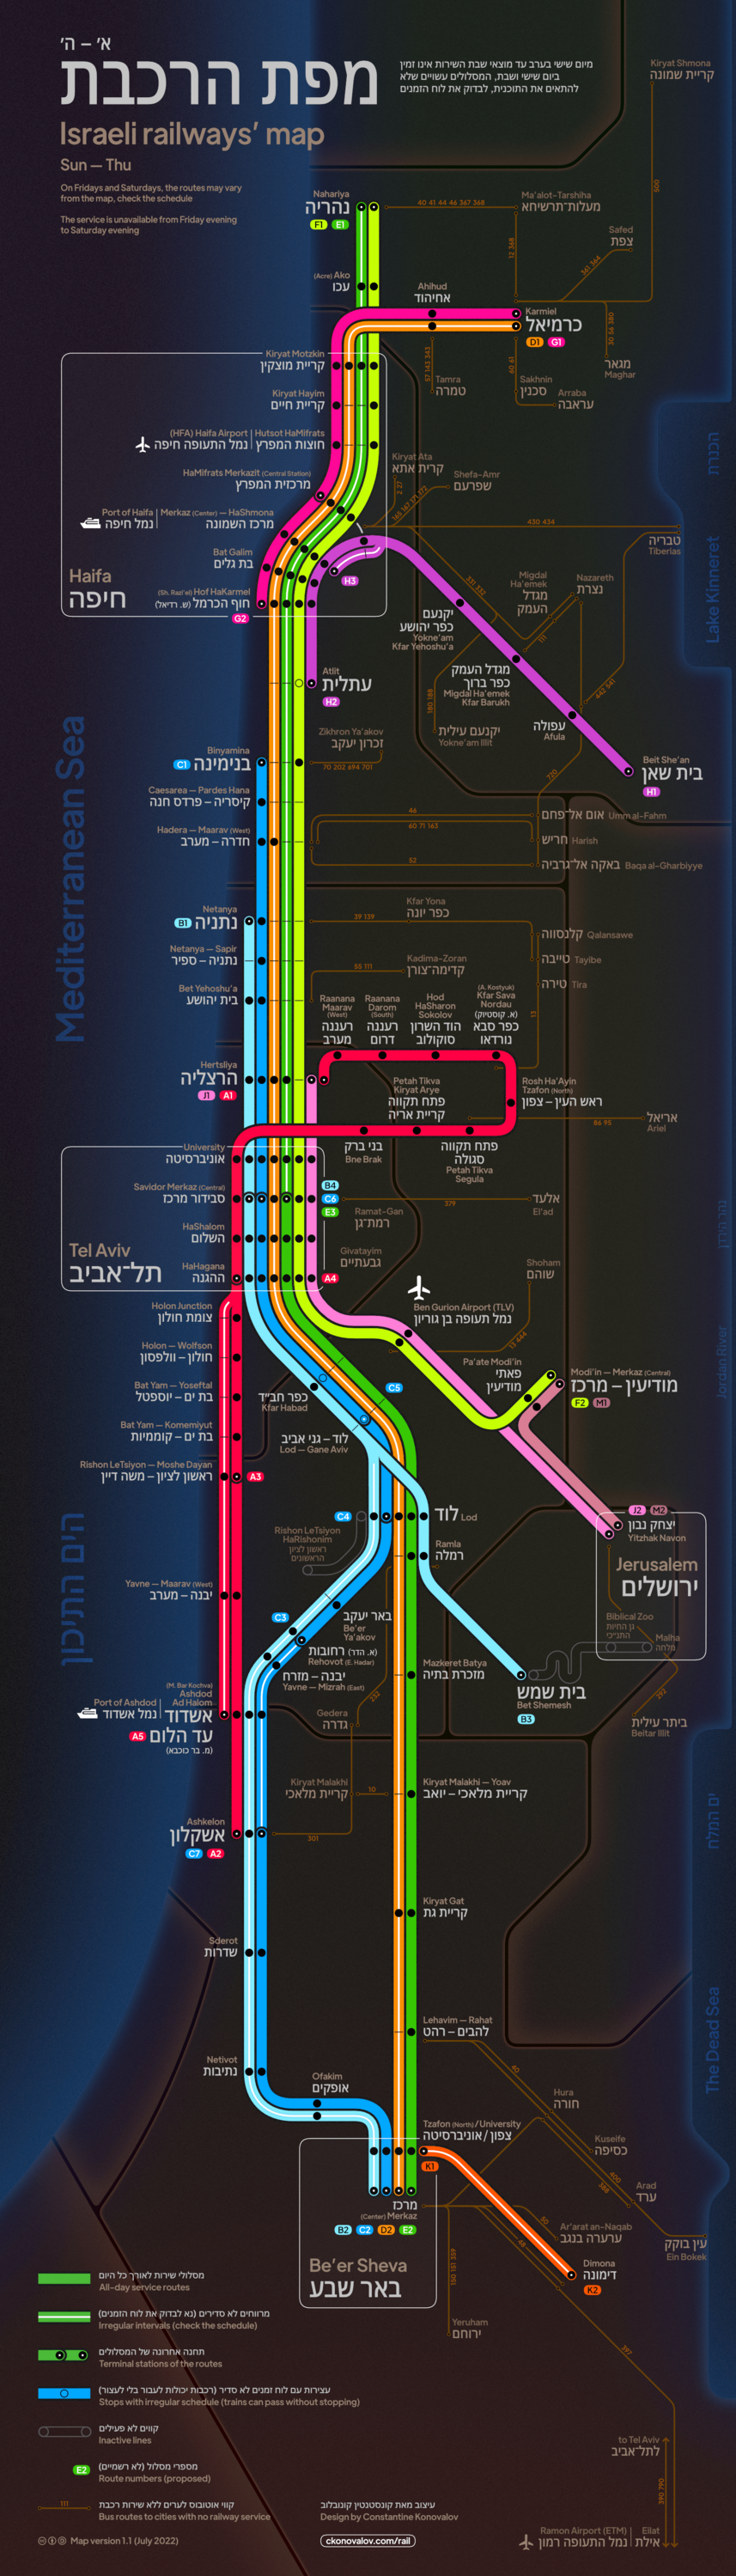 Карта израильских железных дорог авторства Коновалова